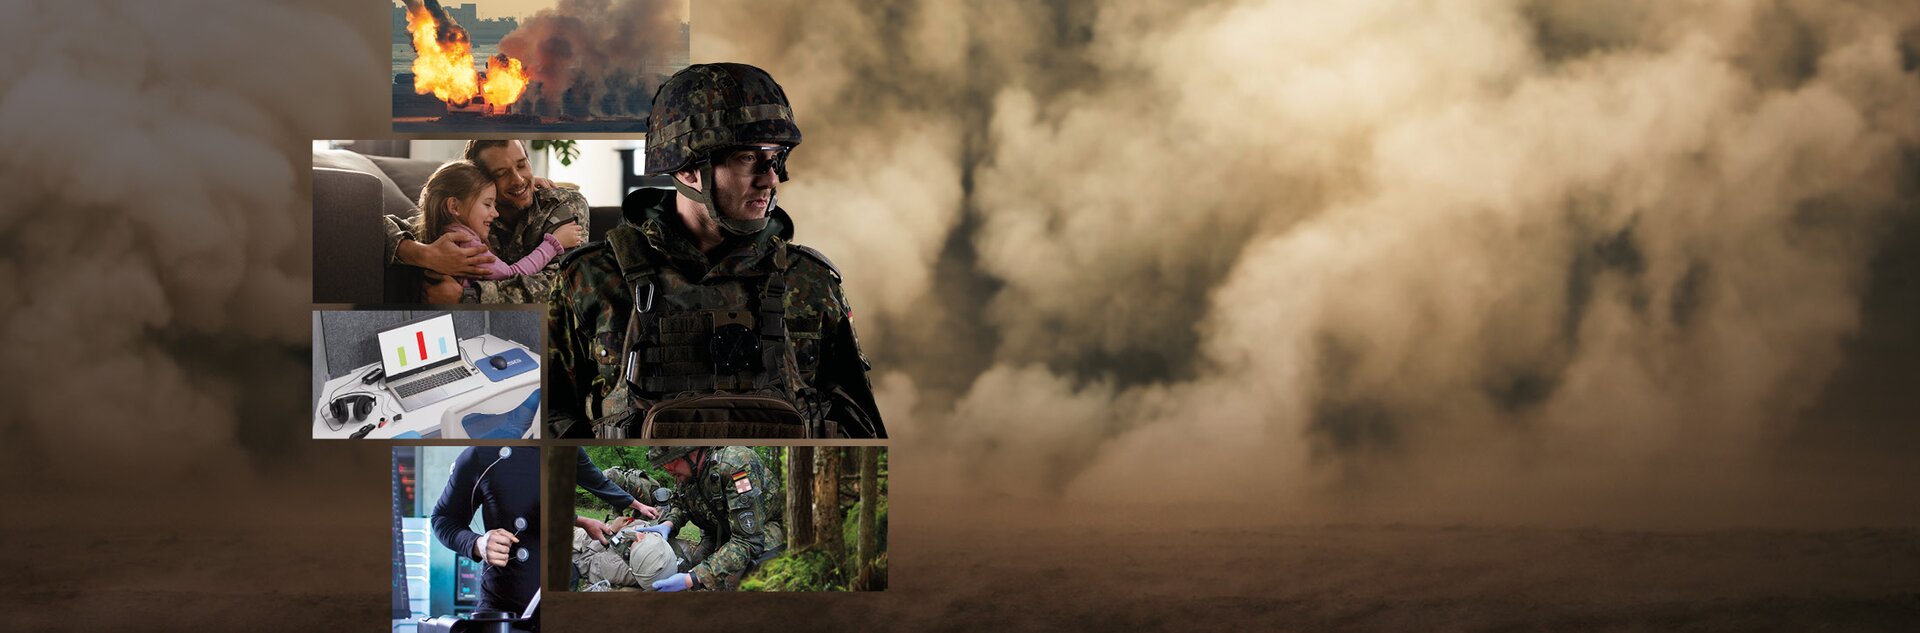 Mit der interaktiven E-Learning-Trainingsplattform CHARLY trainieren die Soldatinnen und Soldaten, um psychische Einsatz-Belastungen erfolgreich zu bewältigen.